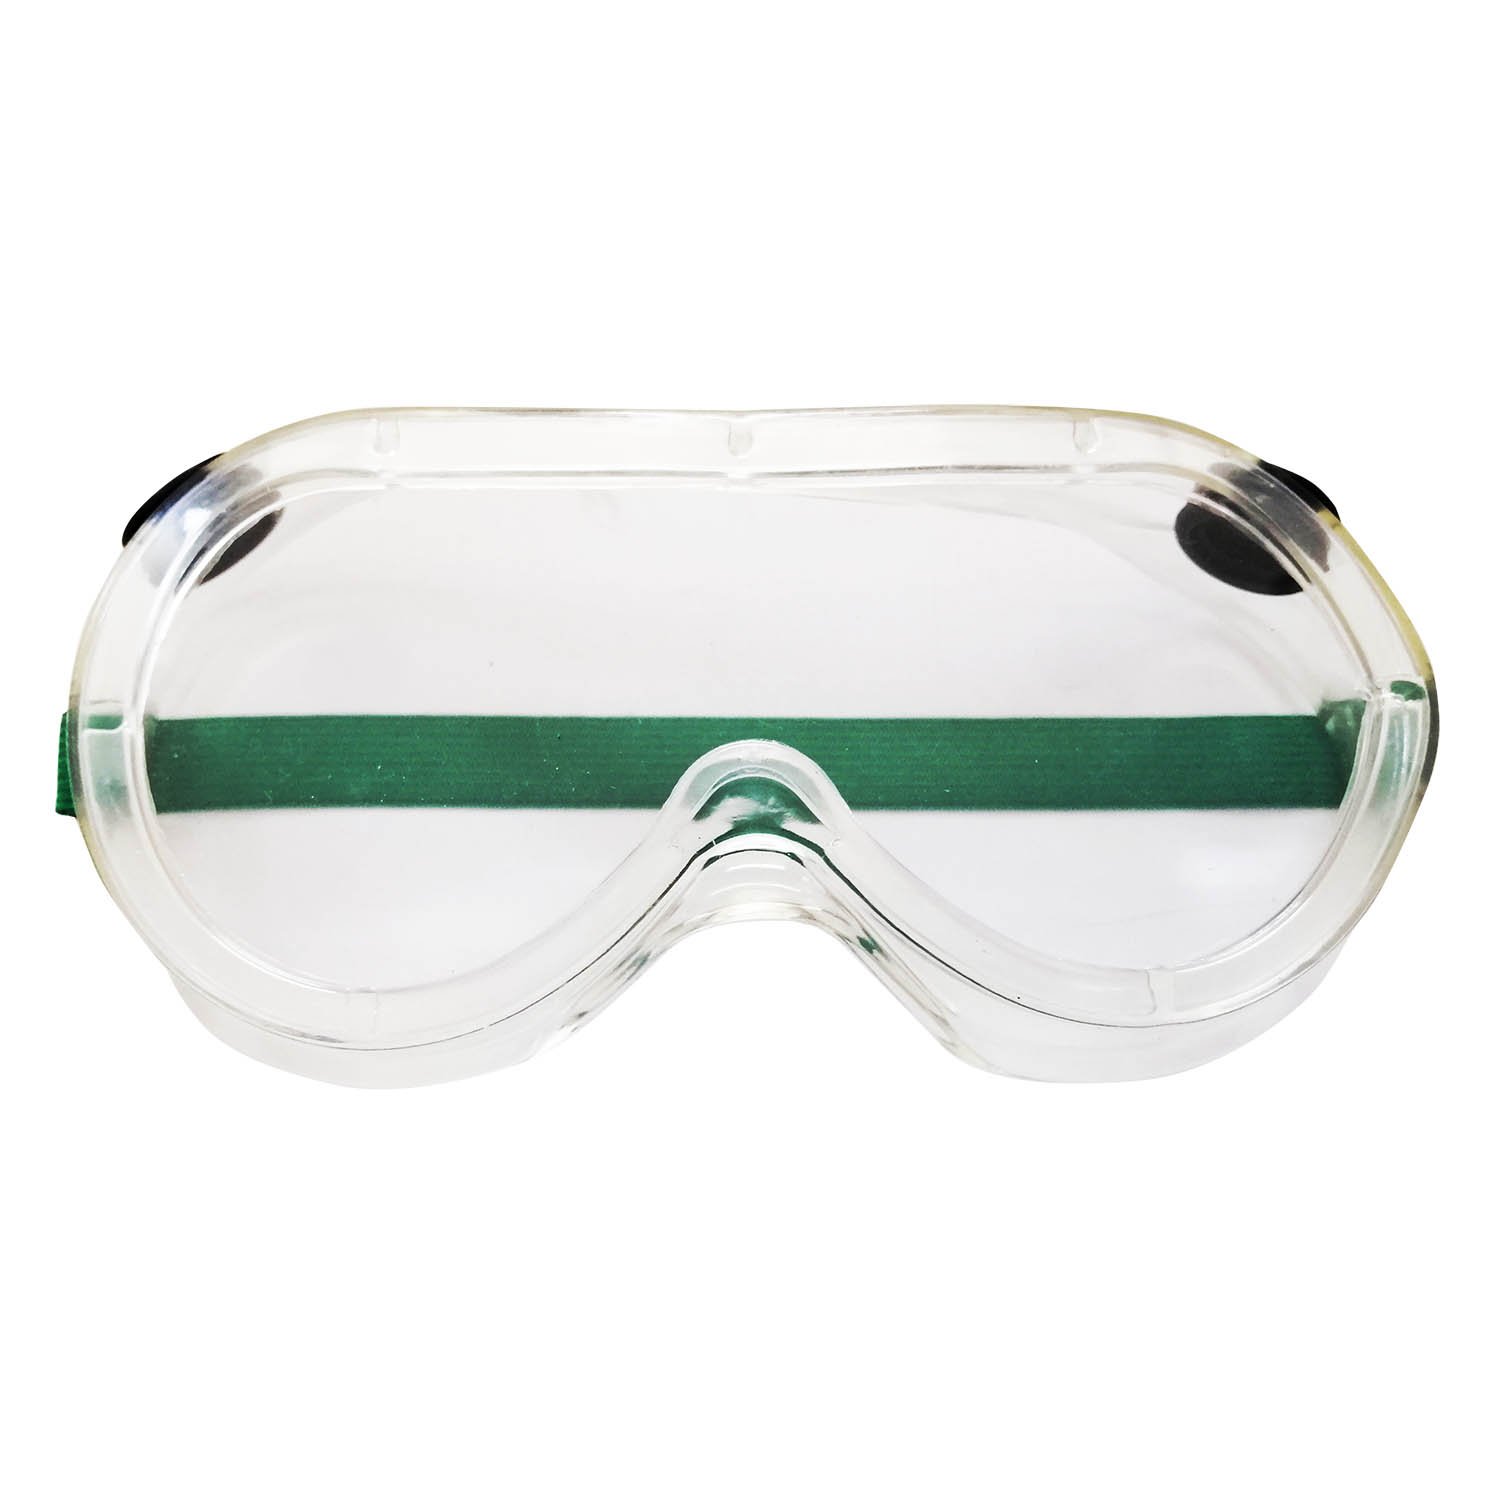 แว่นตากันสะเก็ต แบบใสมีสายรัด แว่นตานิรภัย Dromex DV-11